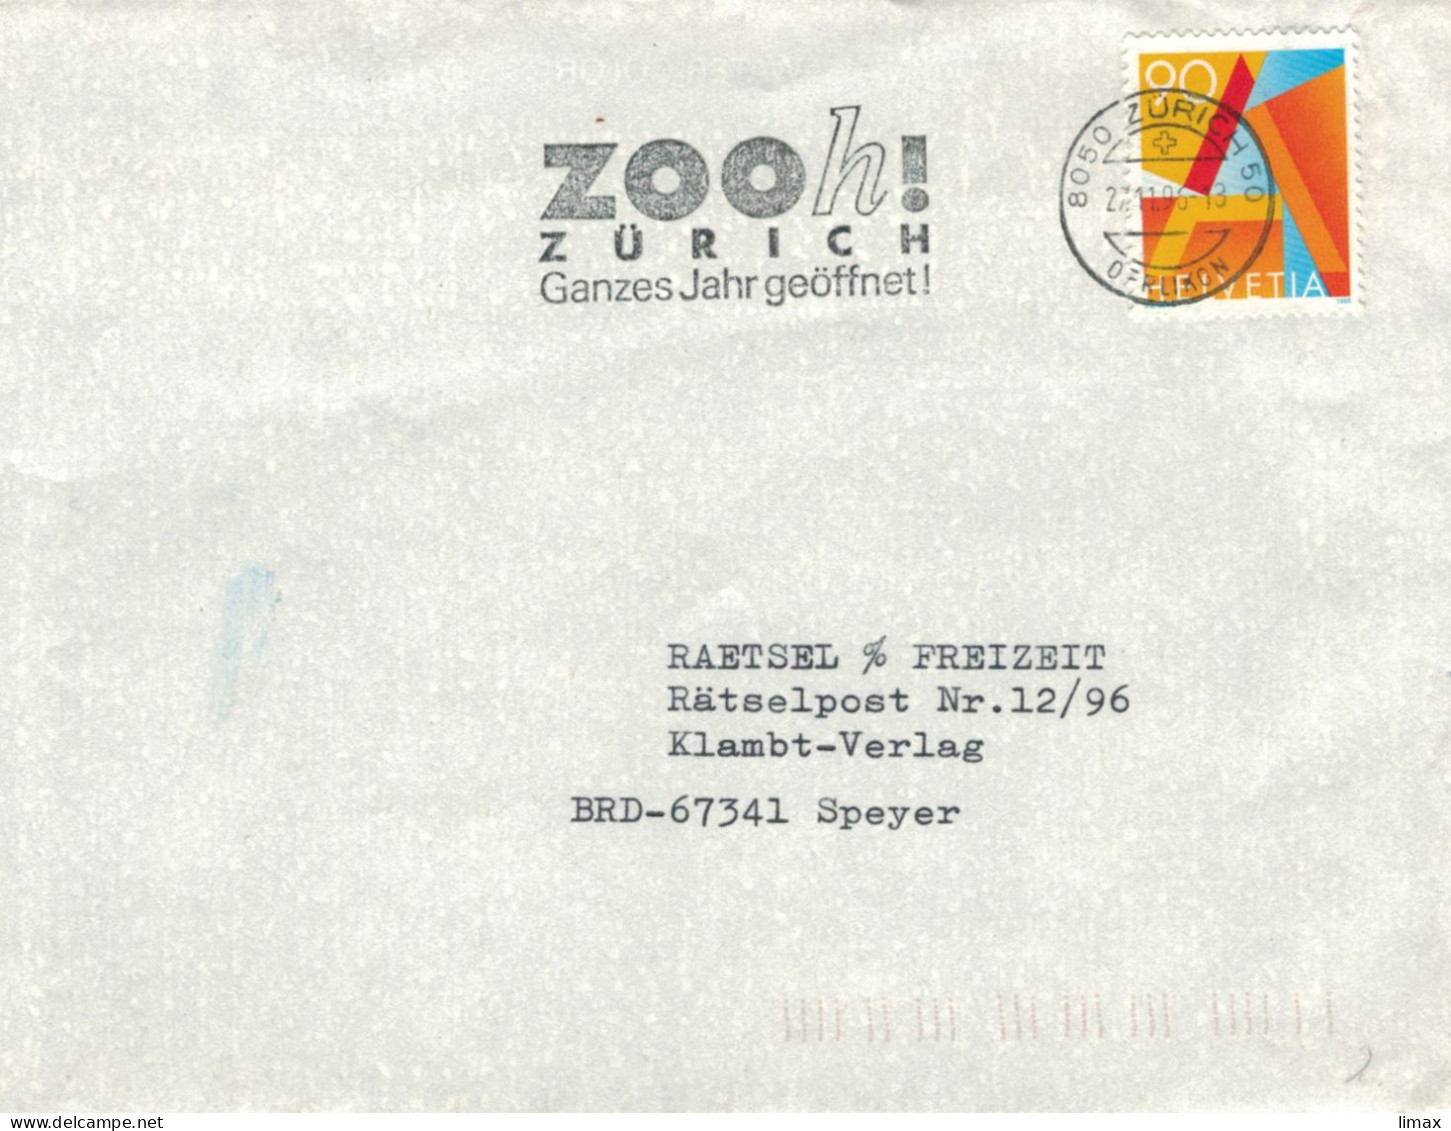 8050 Zürich 1996 Zoo Ganzes Jahr Geöffnet - Zooooh - Covers & Documents